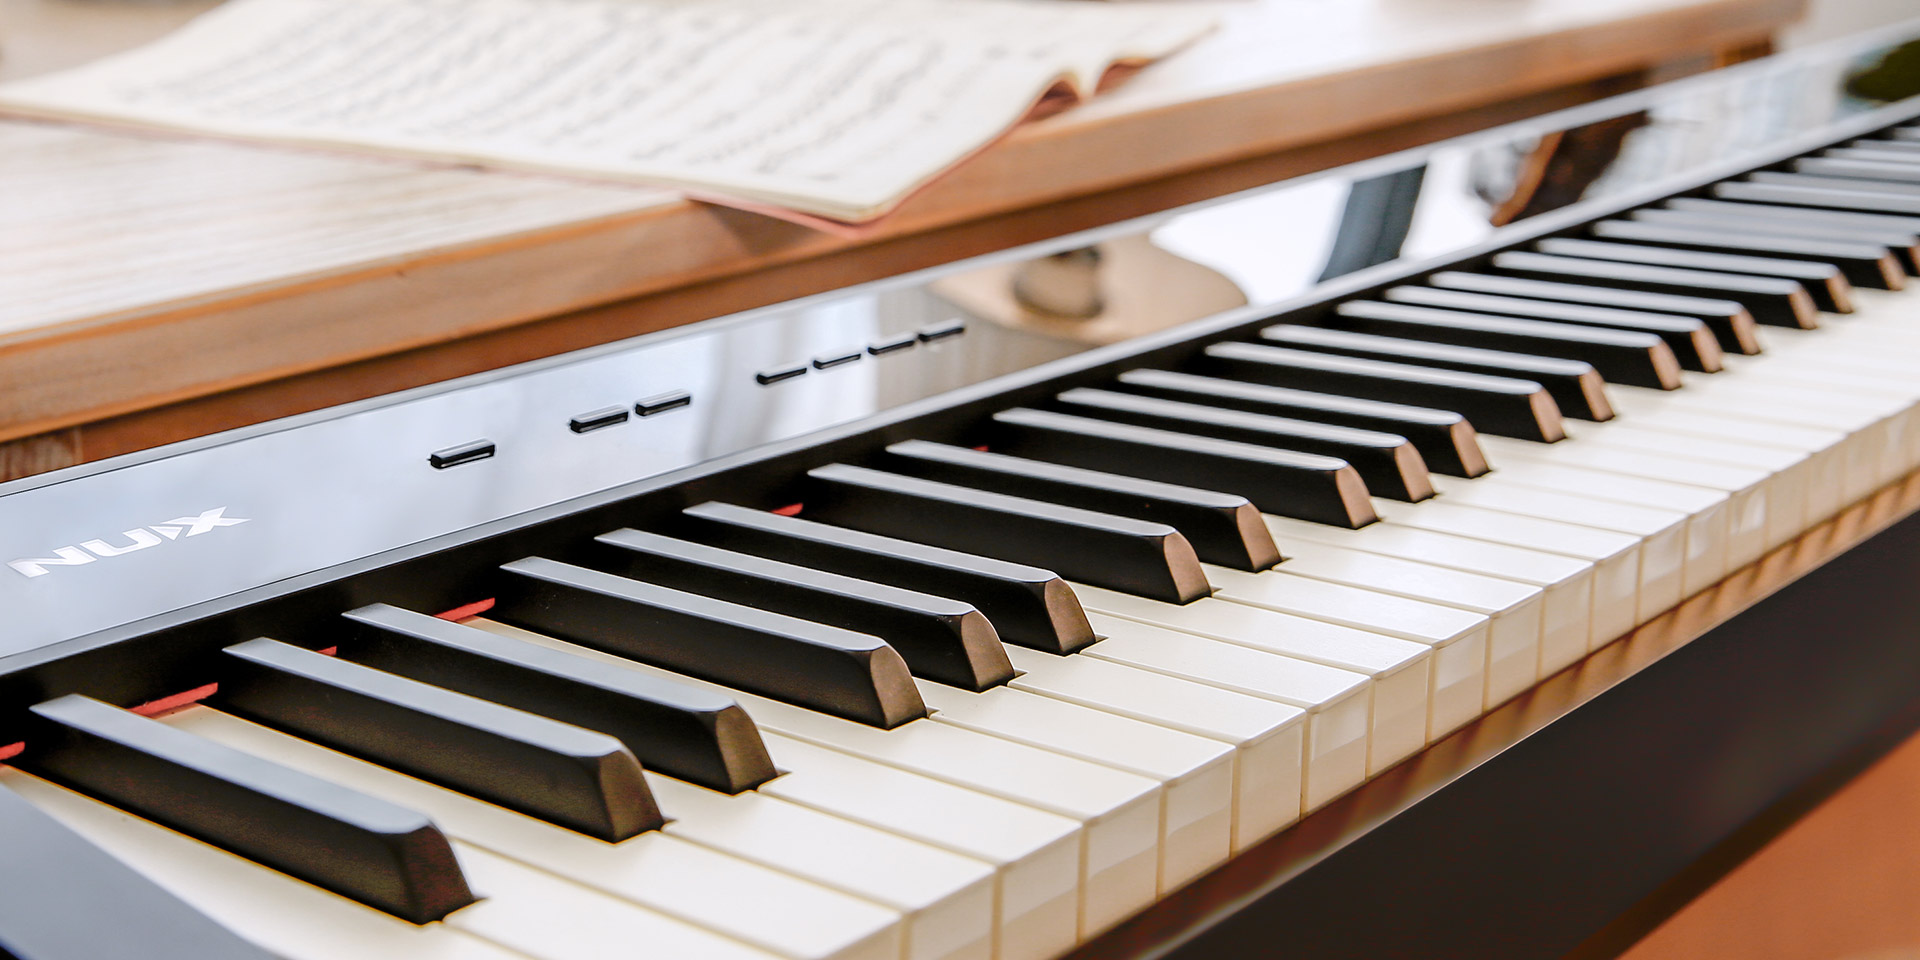 Đàn Piano Điện/ Portable Digital Piano Nux NPK-10 - Hàng chính hãng